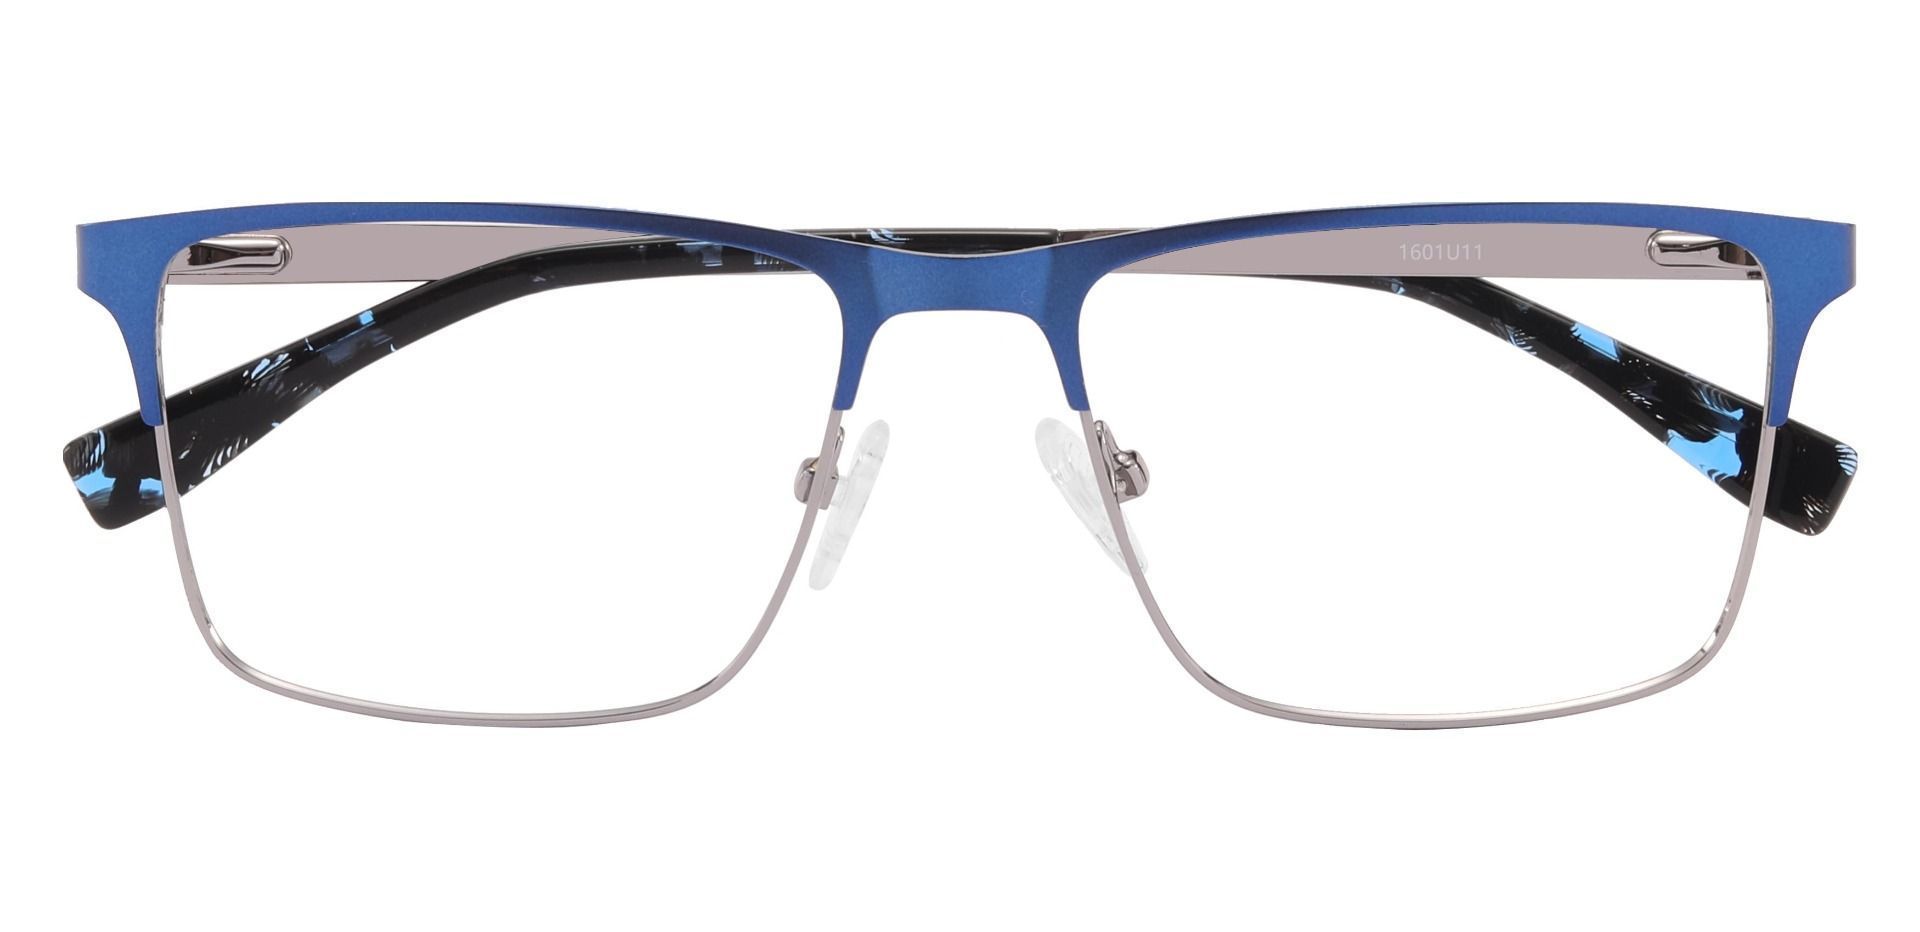 Yukon Square Non-Rx Glasses - Blue